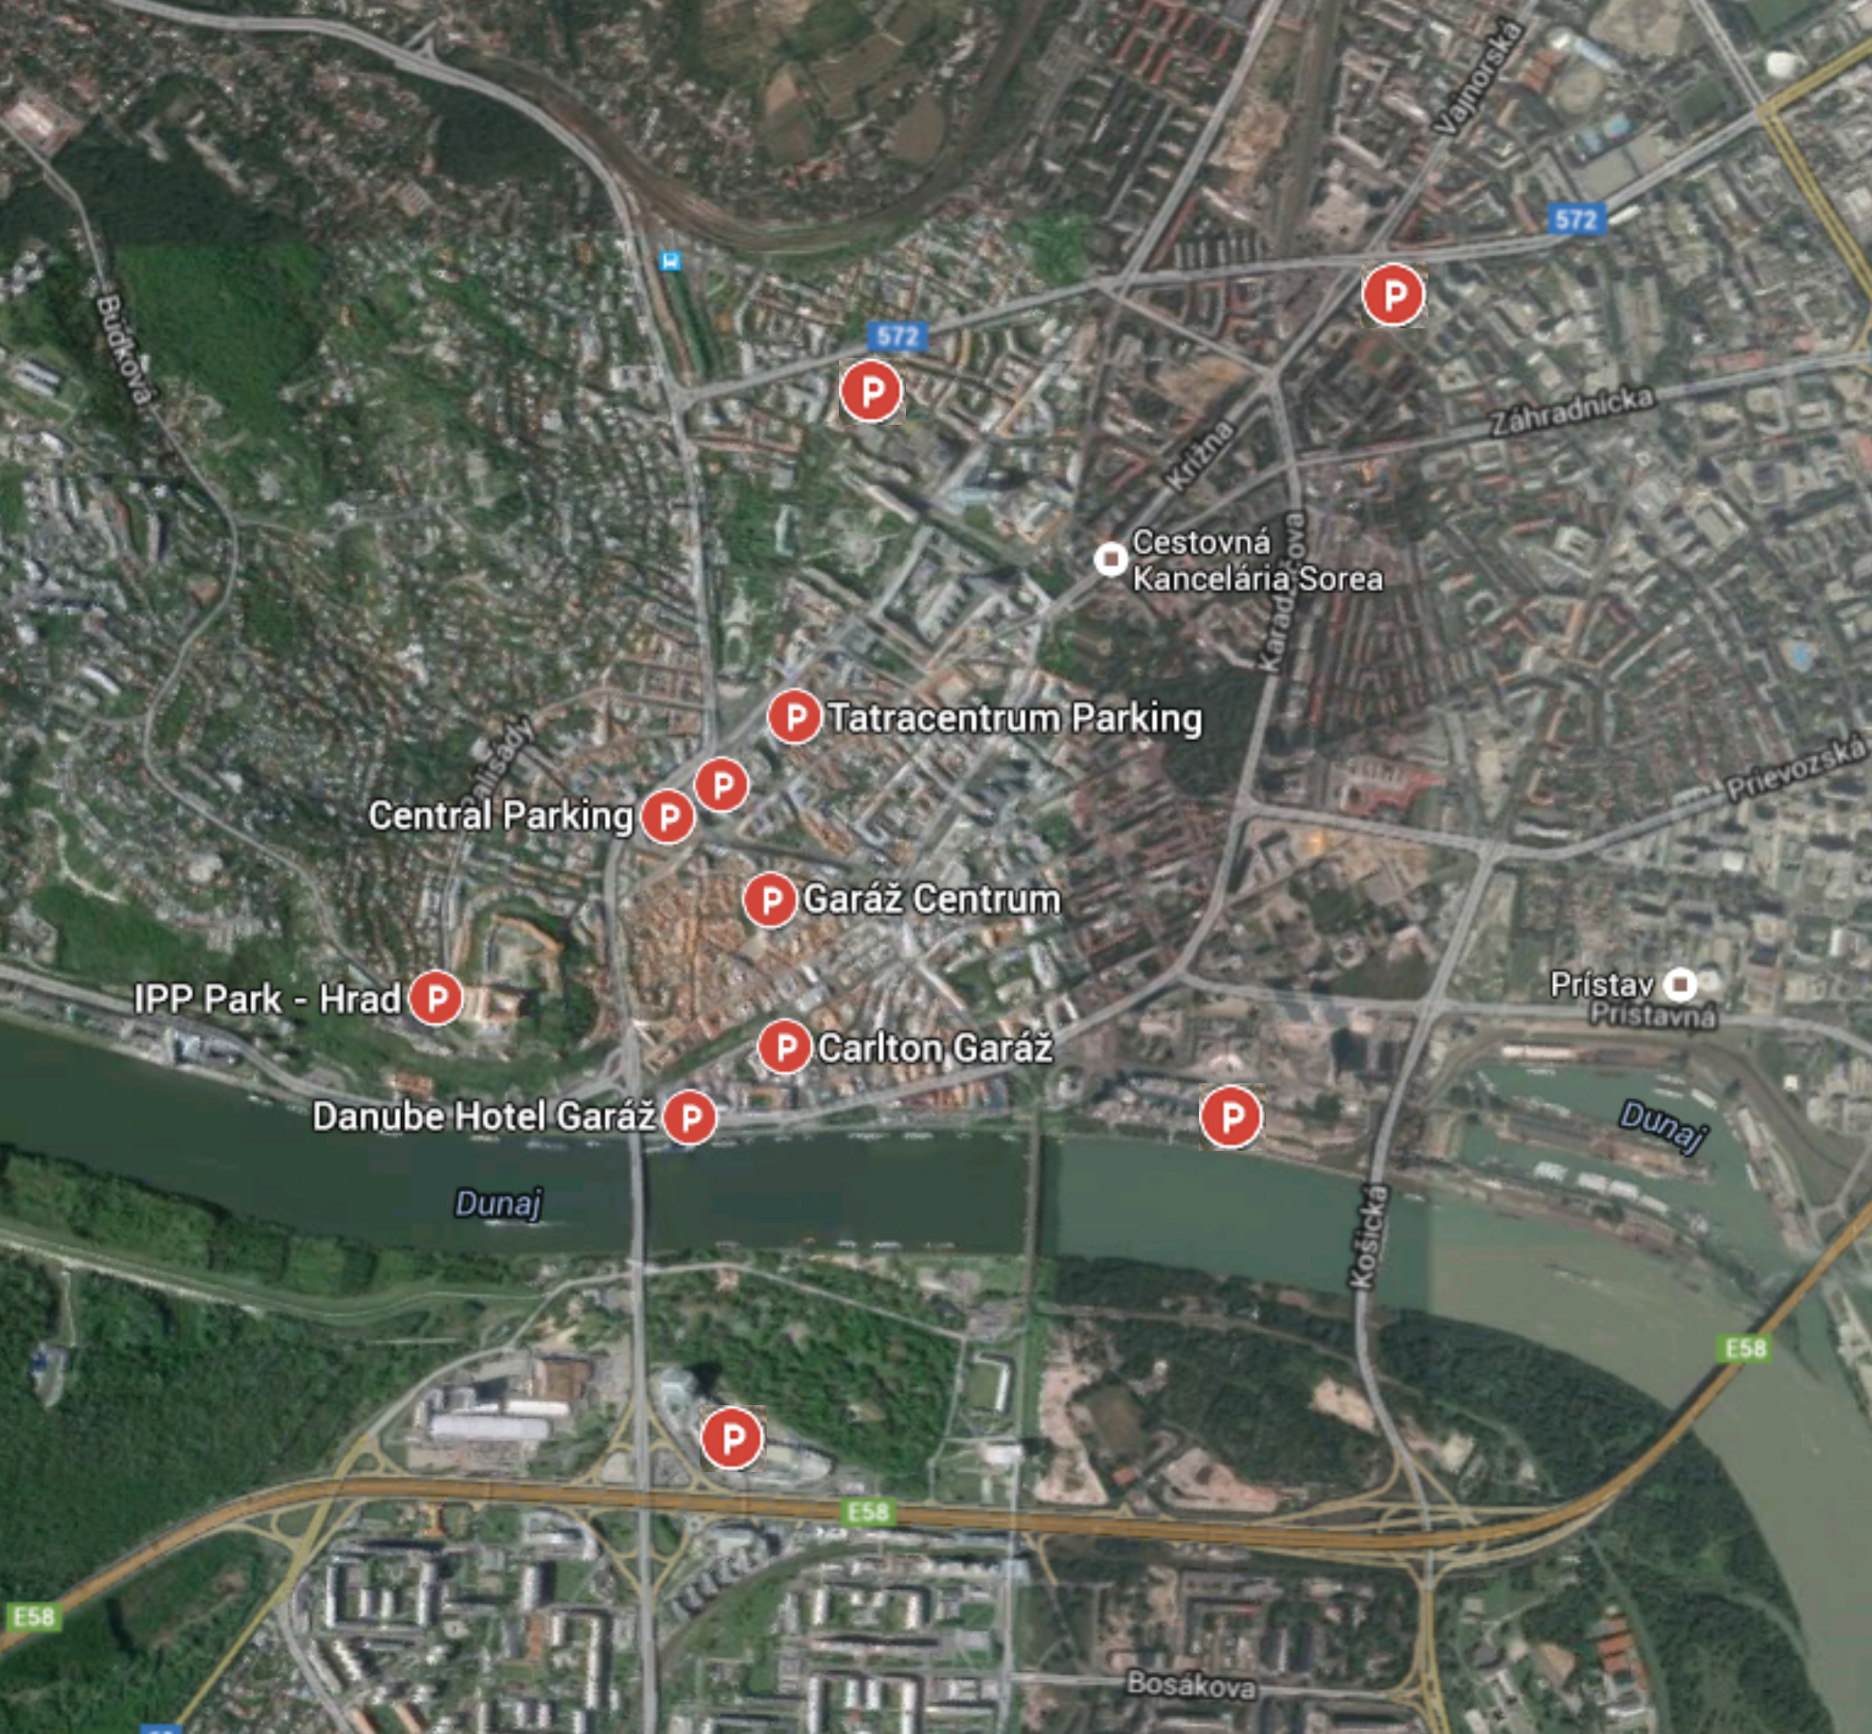 Parkovacie domy v Bratislave - nedostatočné kapacity